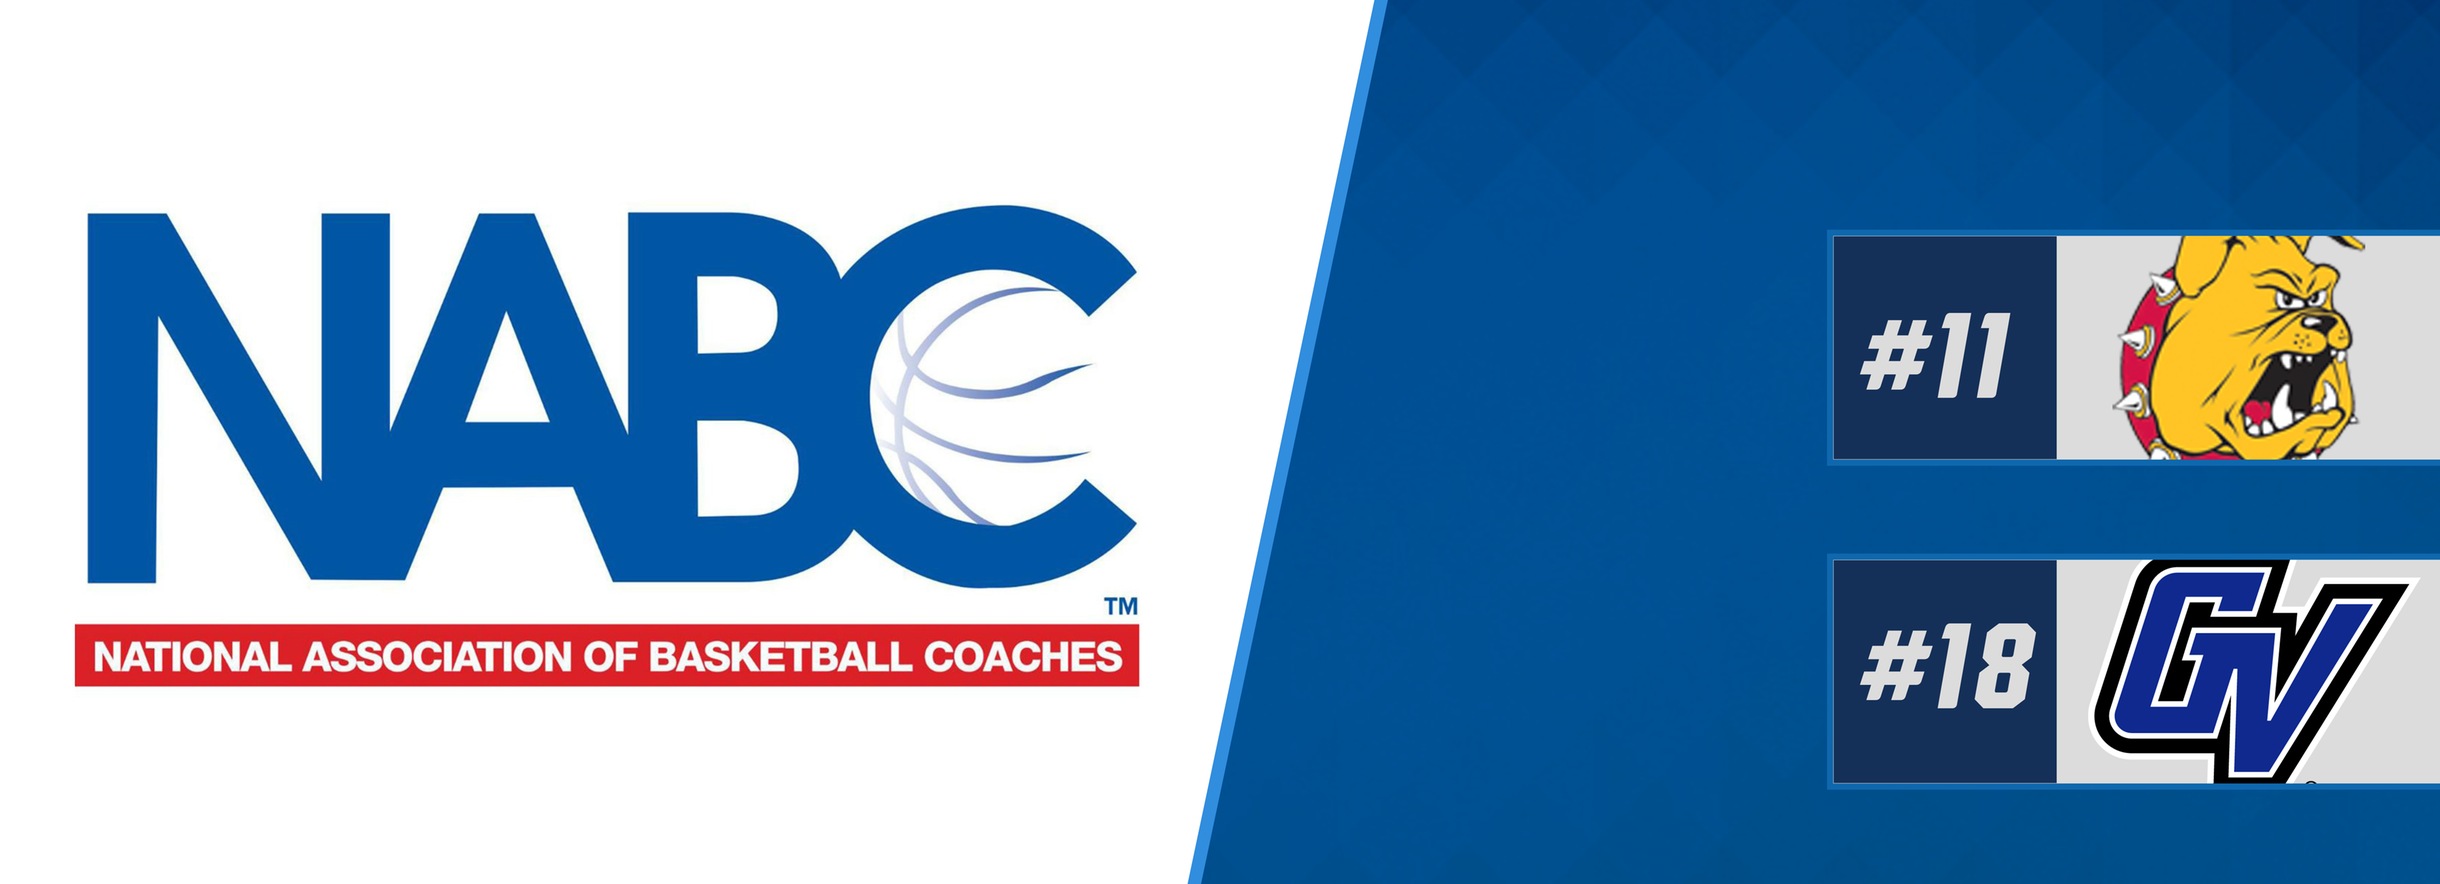 FSU 11, GVSU 18 In Latest NABC Coaches Poll